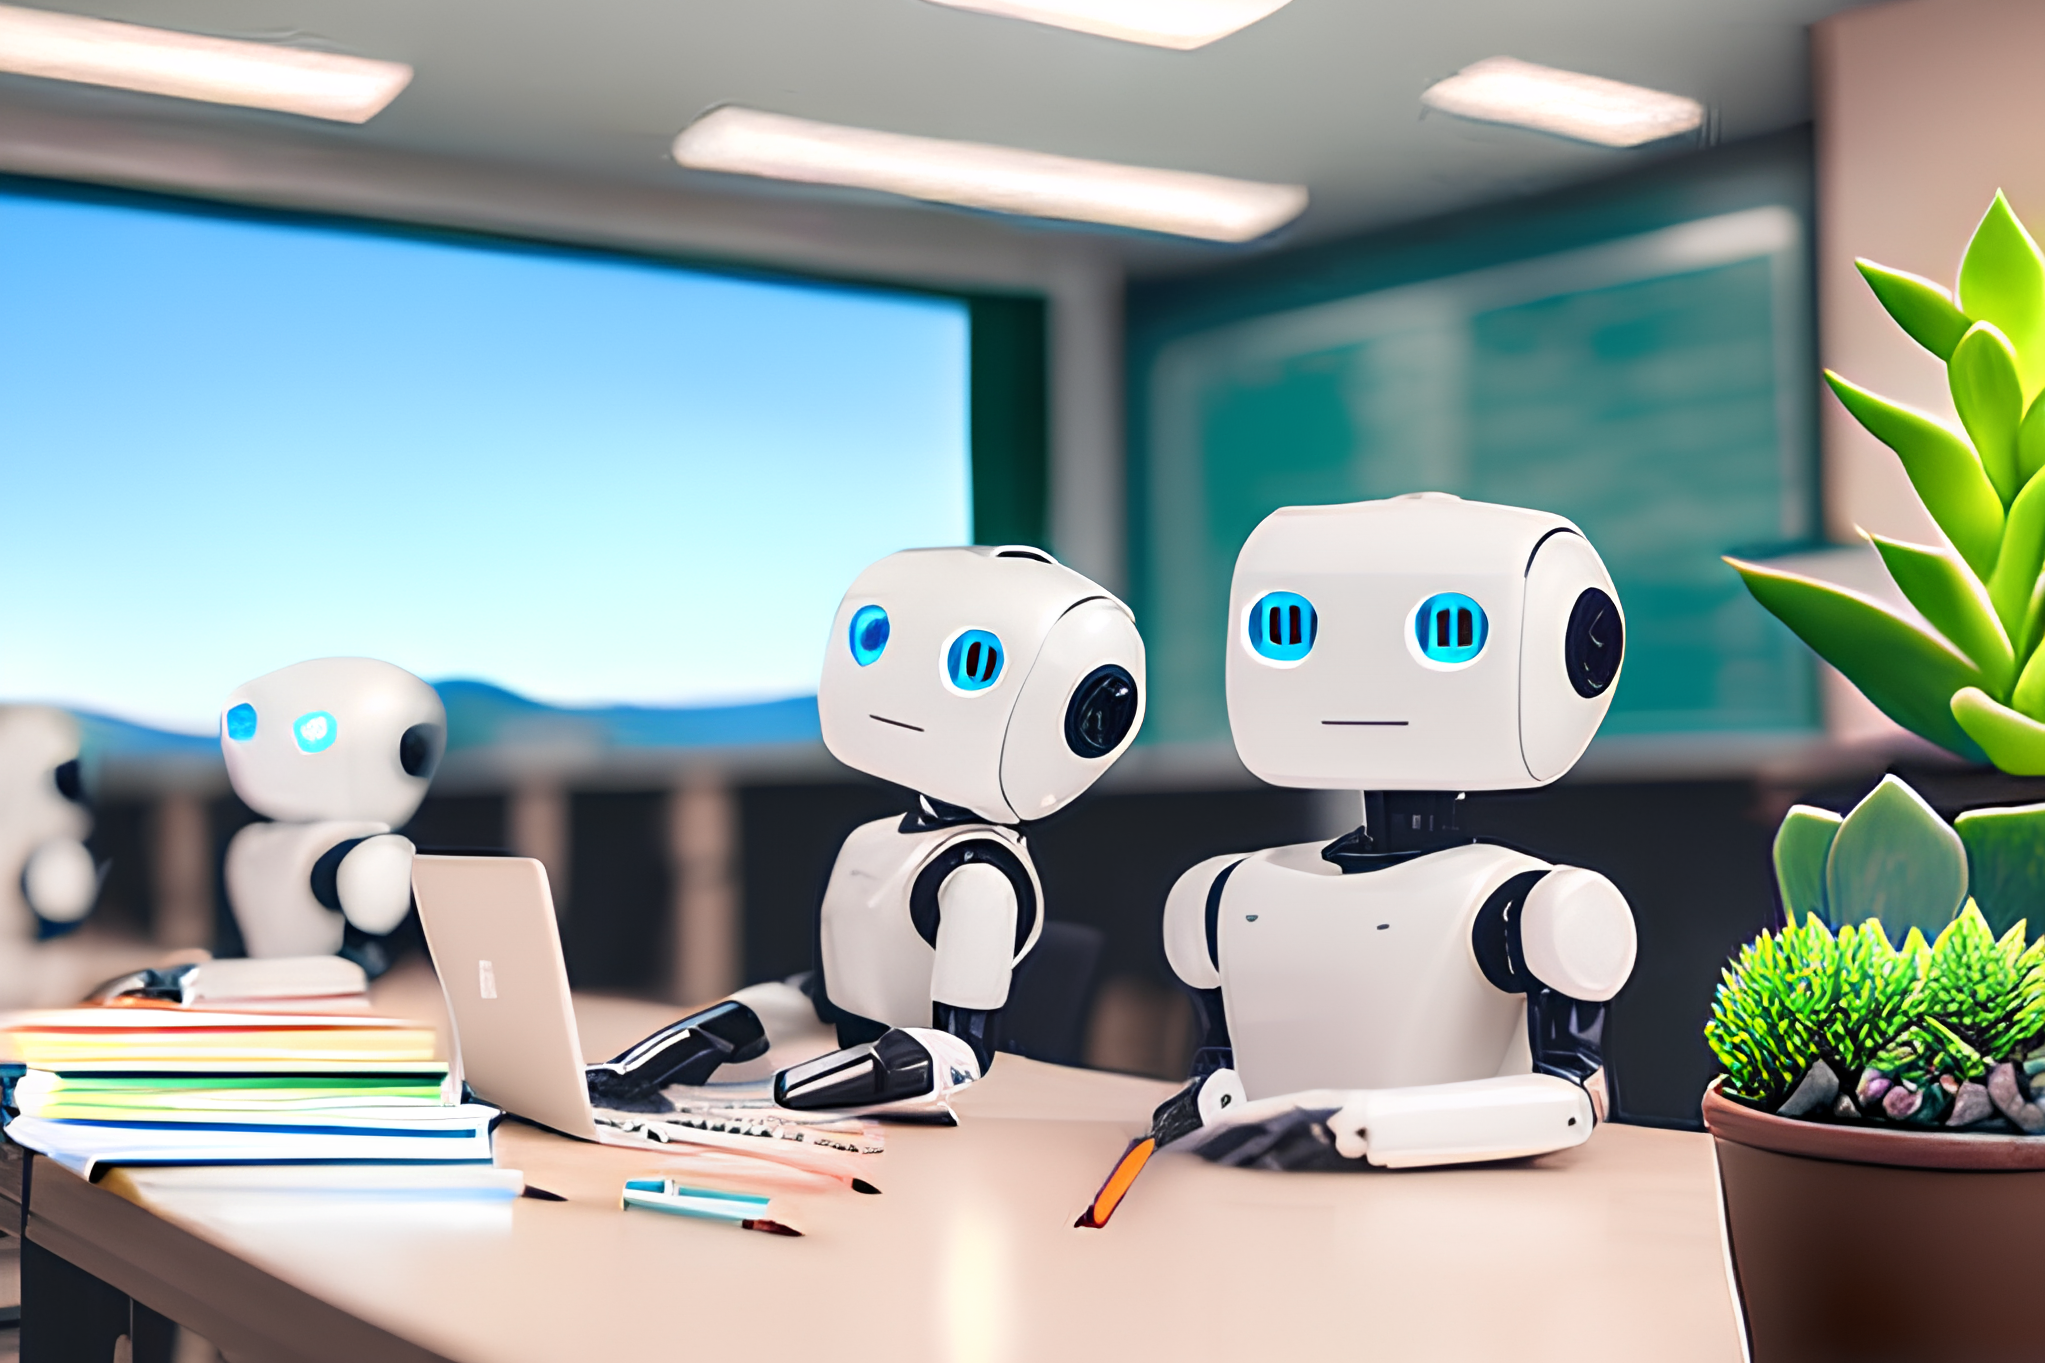 Image numérique : Robots blancs sympathiques à une table dans une salle de classe